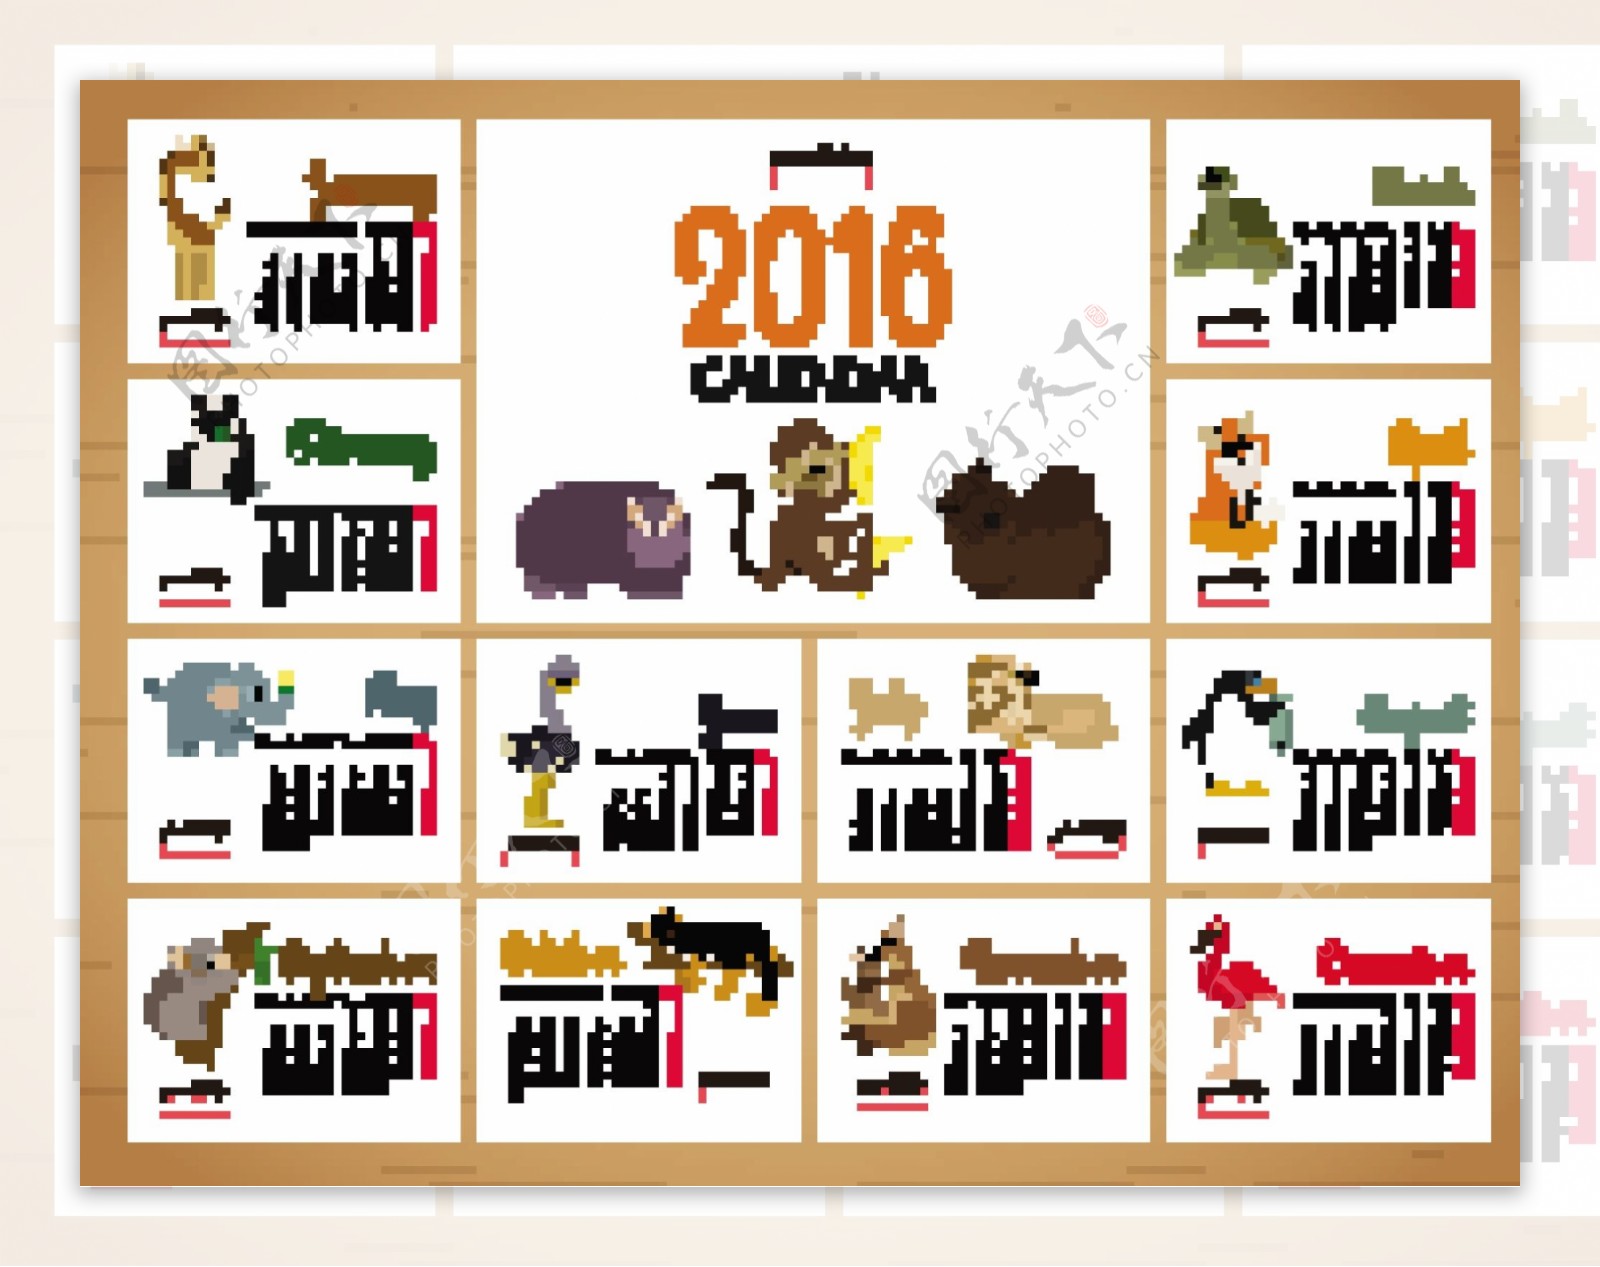 2016年小动物年历矢量素材